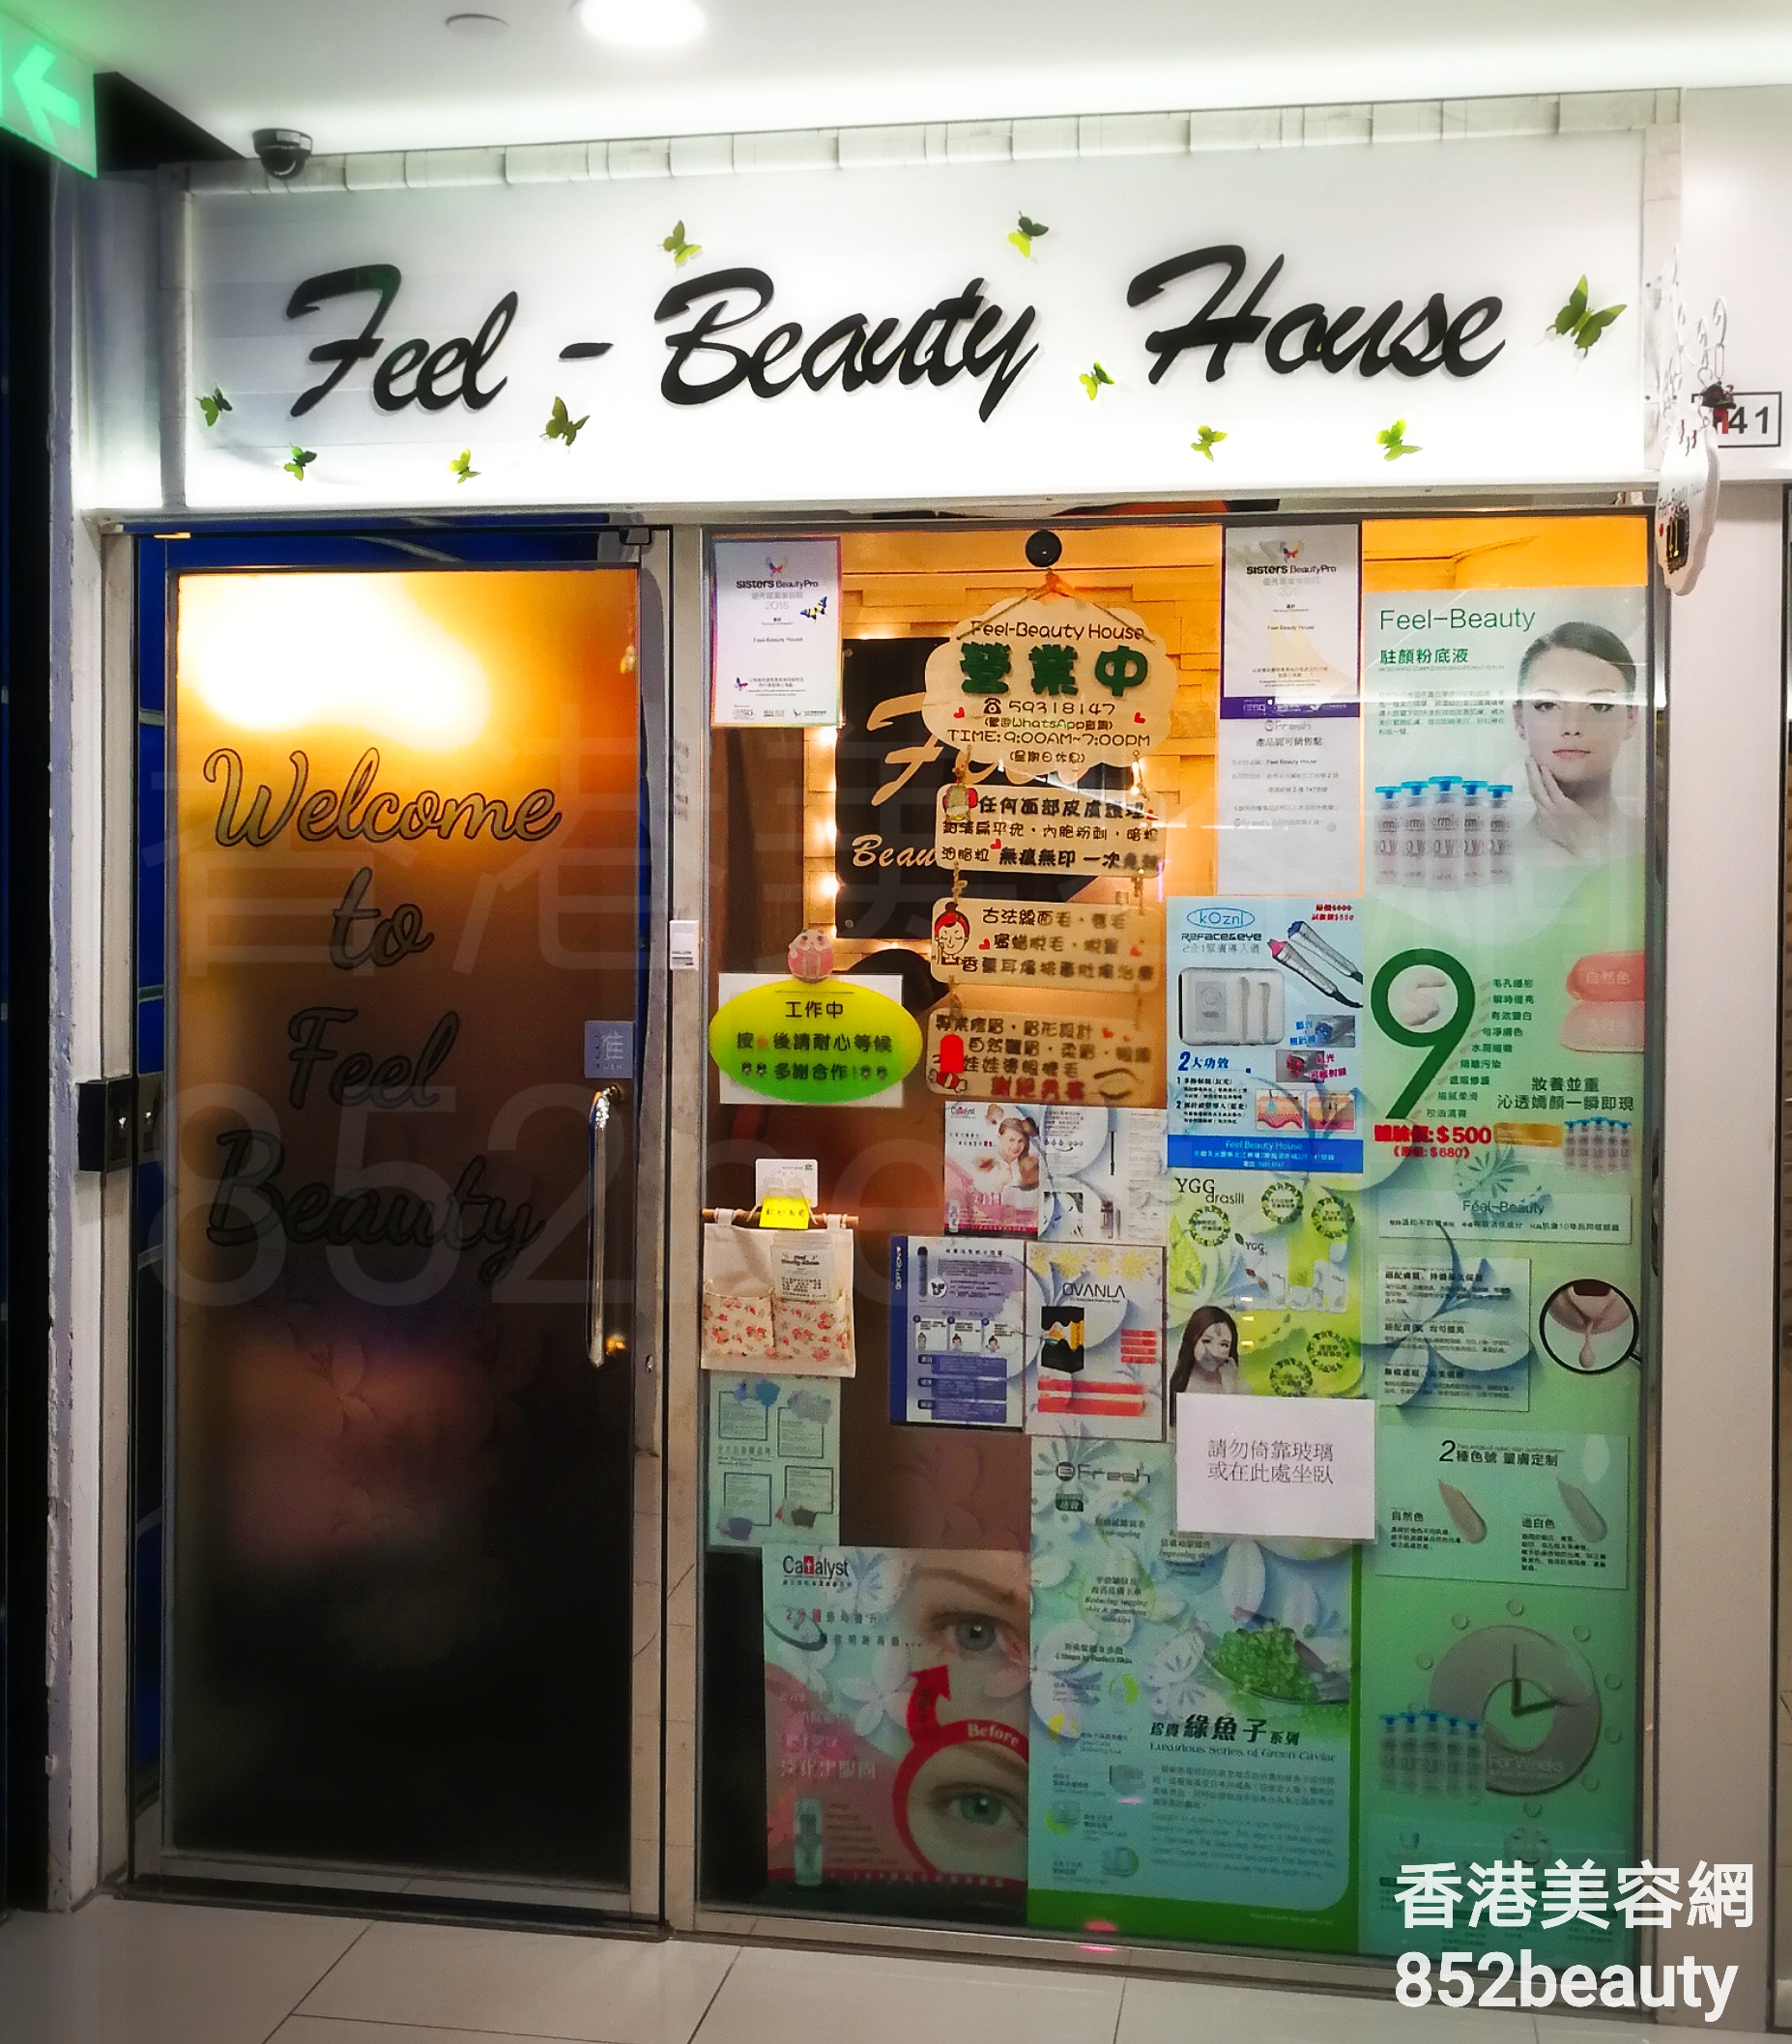 Massage/SPA: Feel-Beauty House